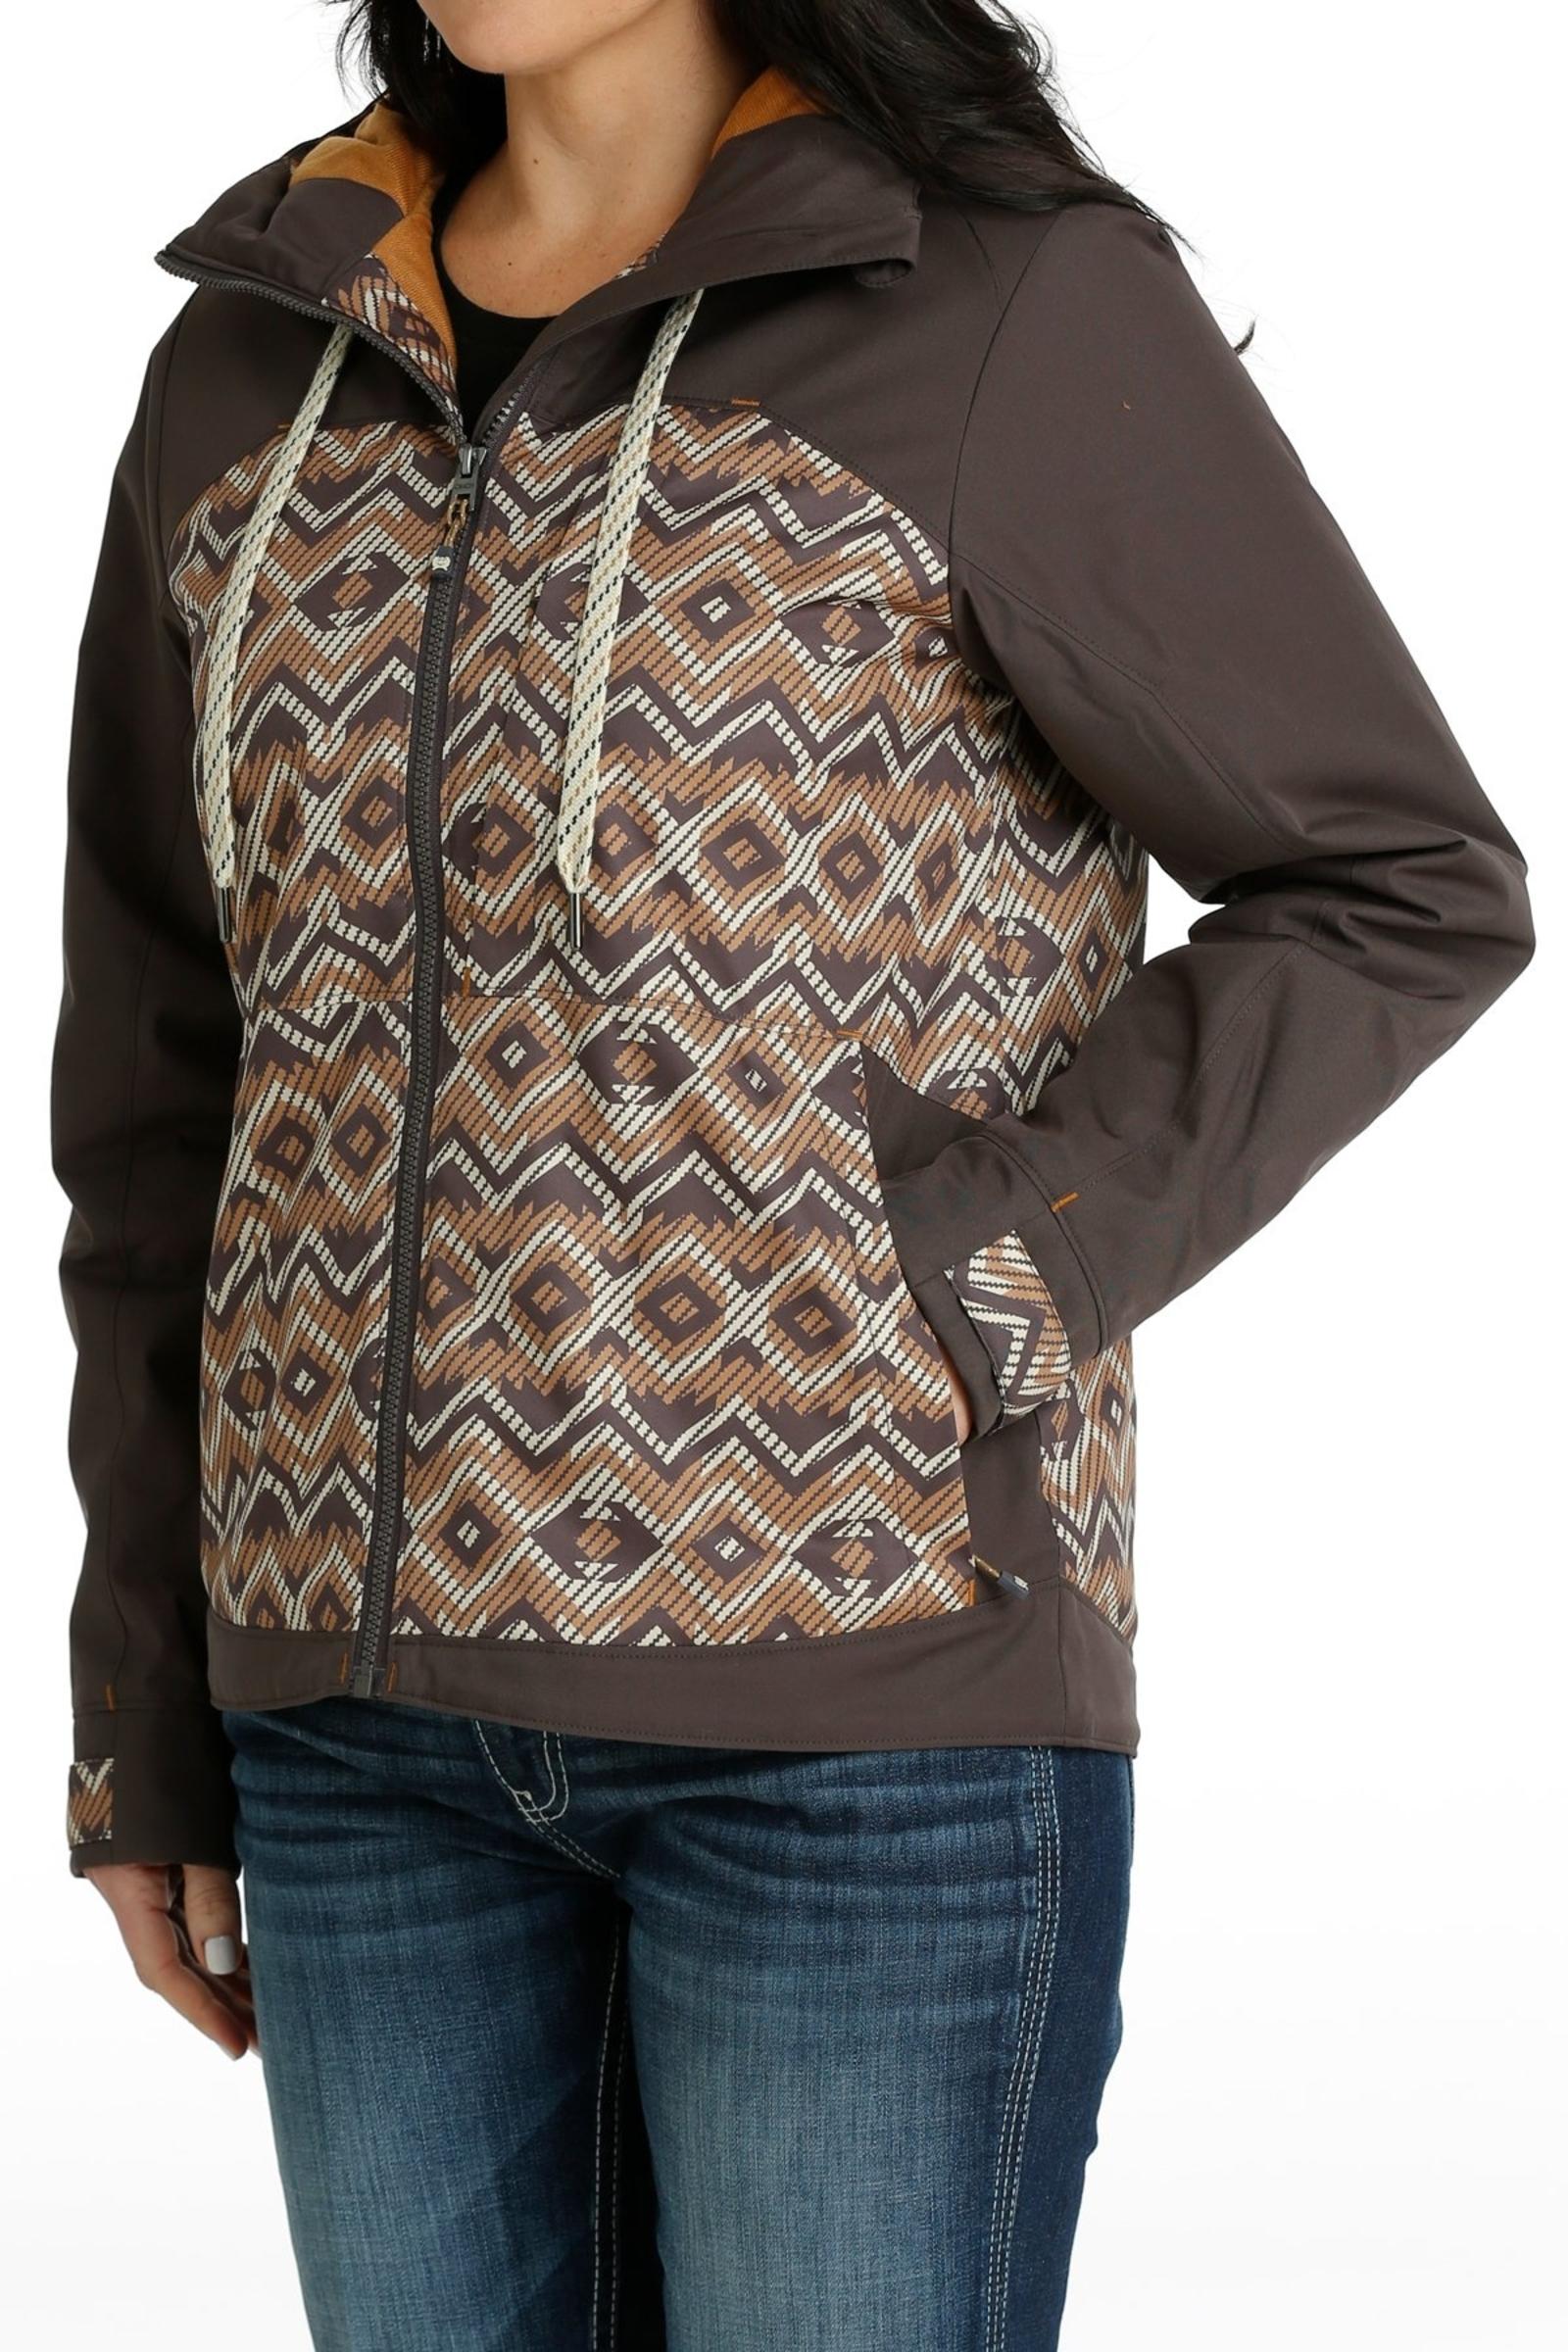 Women's Southwestern Print Ski Jacket - Gray side view